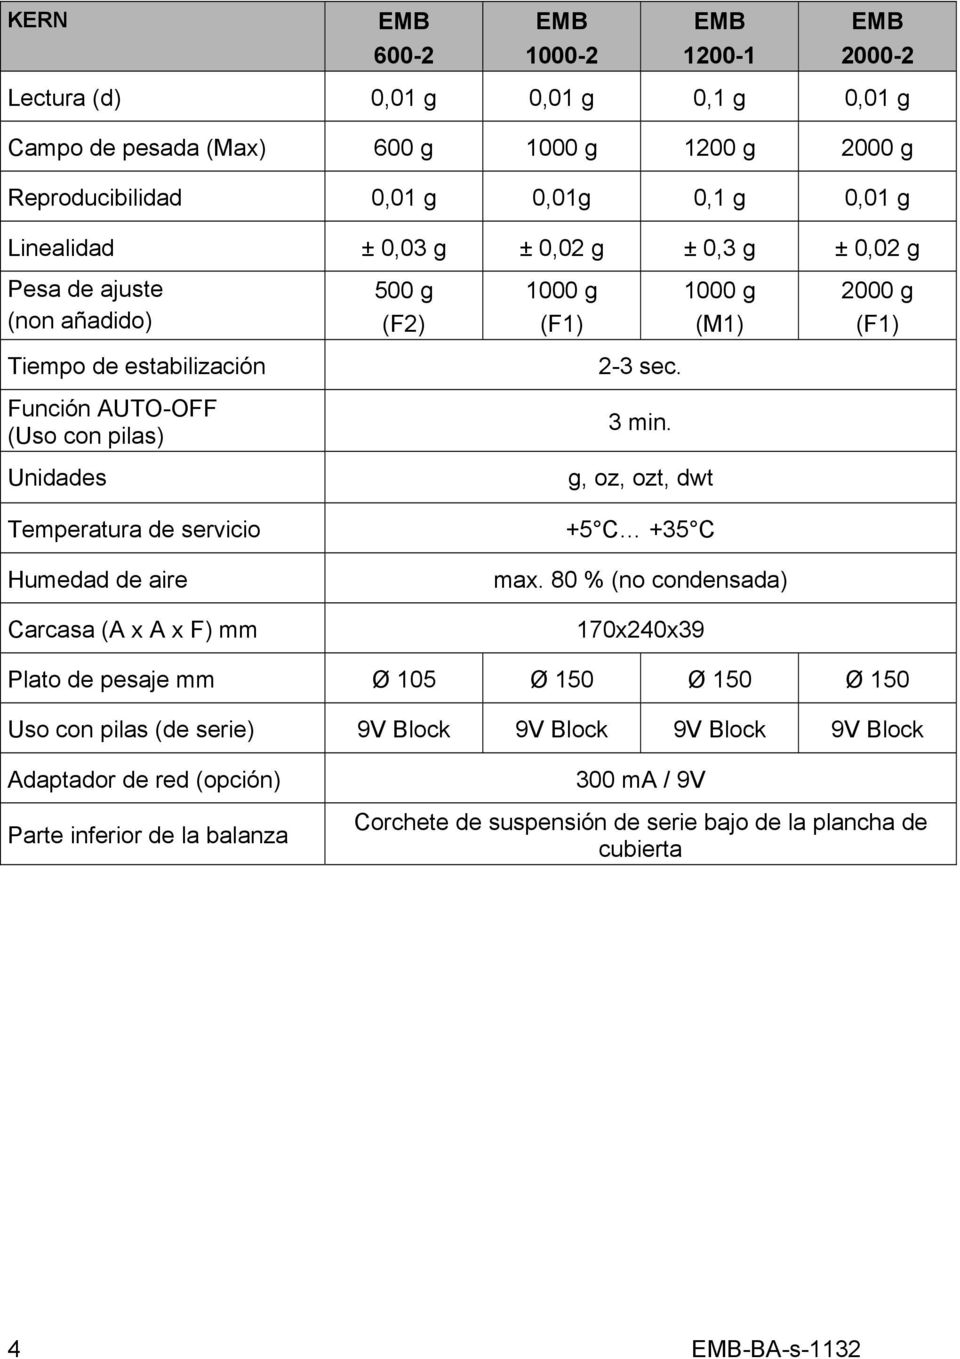 servicio Humedad de aire Carcasa (A x A x F) mm 2-3 sec. 3 min. g, oz, ozt, dwt +5 C +35 C max.